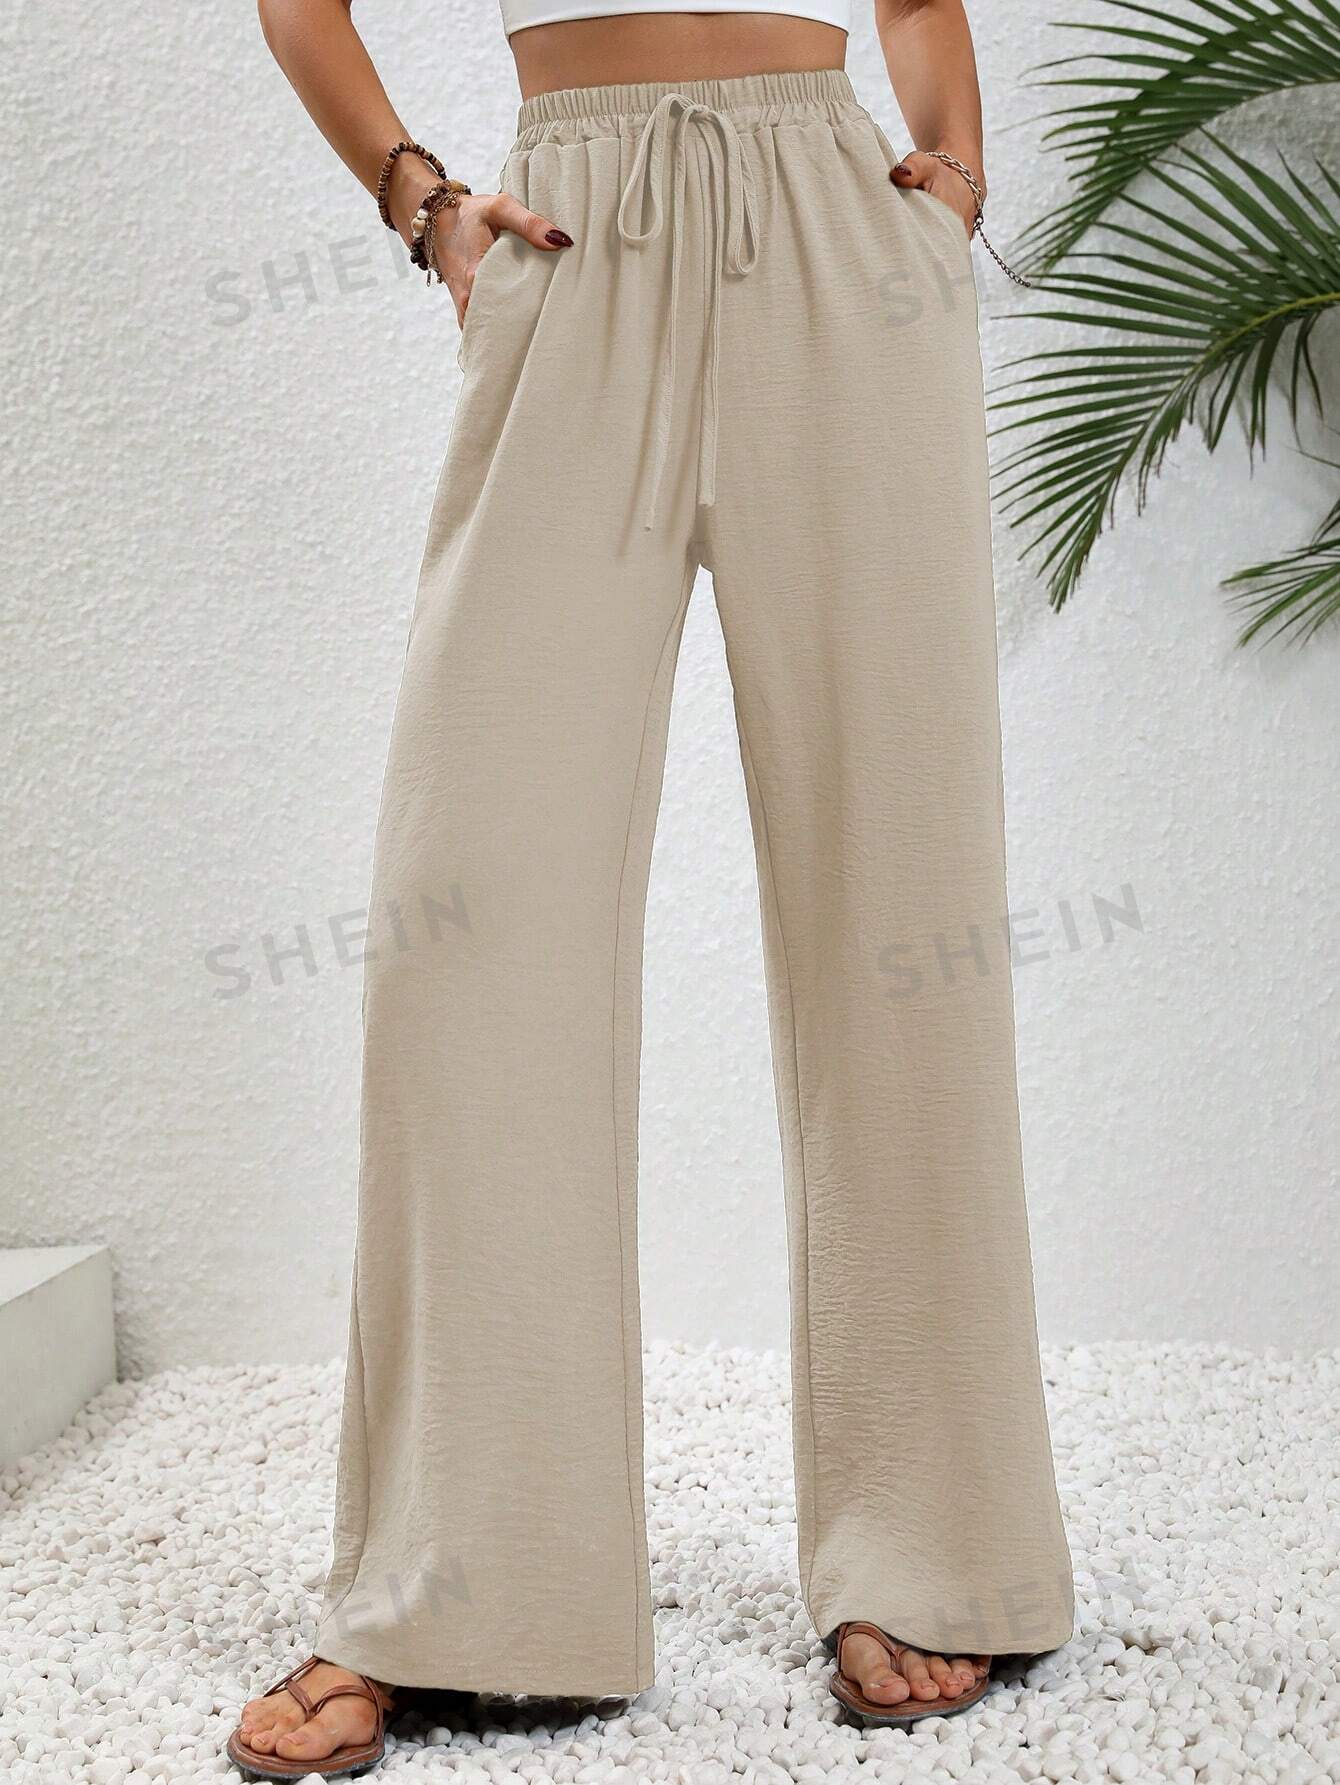 SHEIN LUNE женские однотонные длинные брюки с завышенной талией и завязками на талии и карманами, абрикос фото